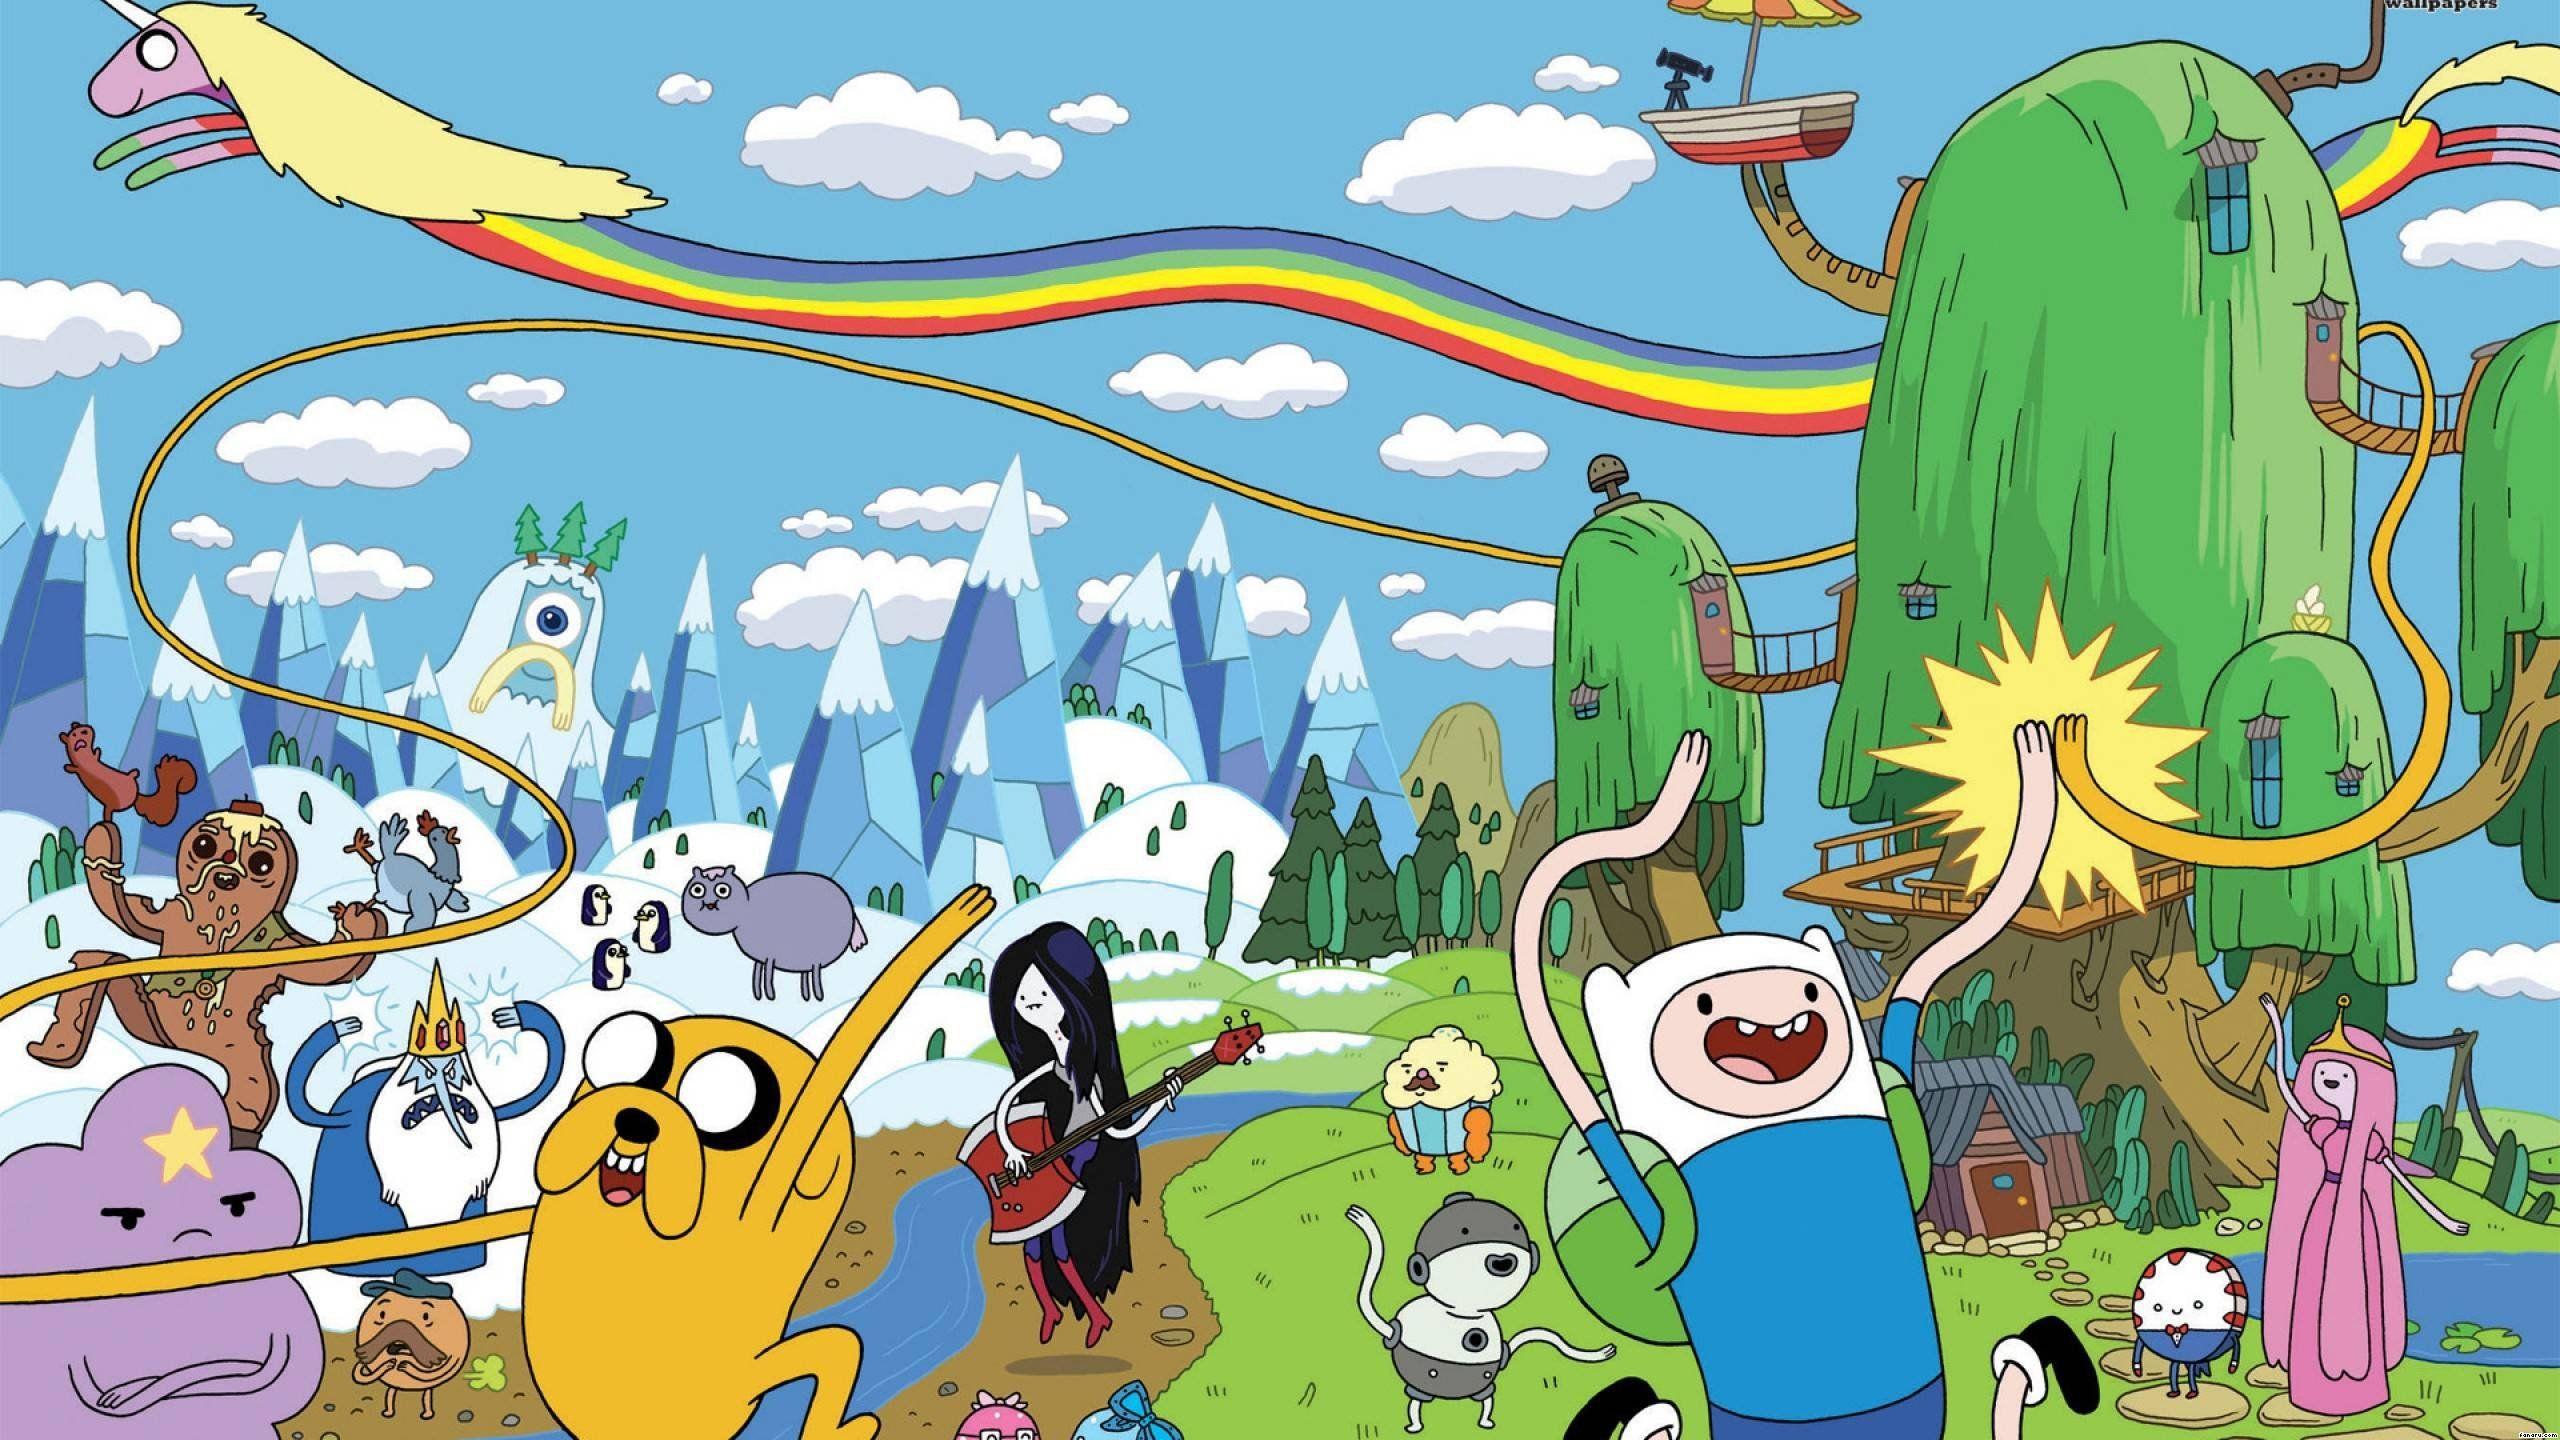 Hình nền hoạt hình Cartoon Network làm bạn nhớ lại tuổi thơ đầy màu sắc và vui nhộn. Chỉ cần một cái nhìn, bạn sẽ cảm thấy được sự hài lòng và thích thú. Hãy nhấp chuột vào hình ảnh này để thưởng thức các nhân vật hoạt hình yêu thích của bạn và lạc vào một thế giới đầy phép thuật.